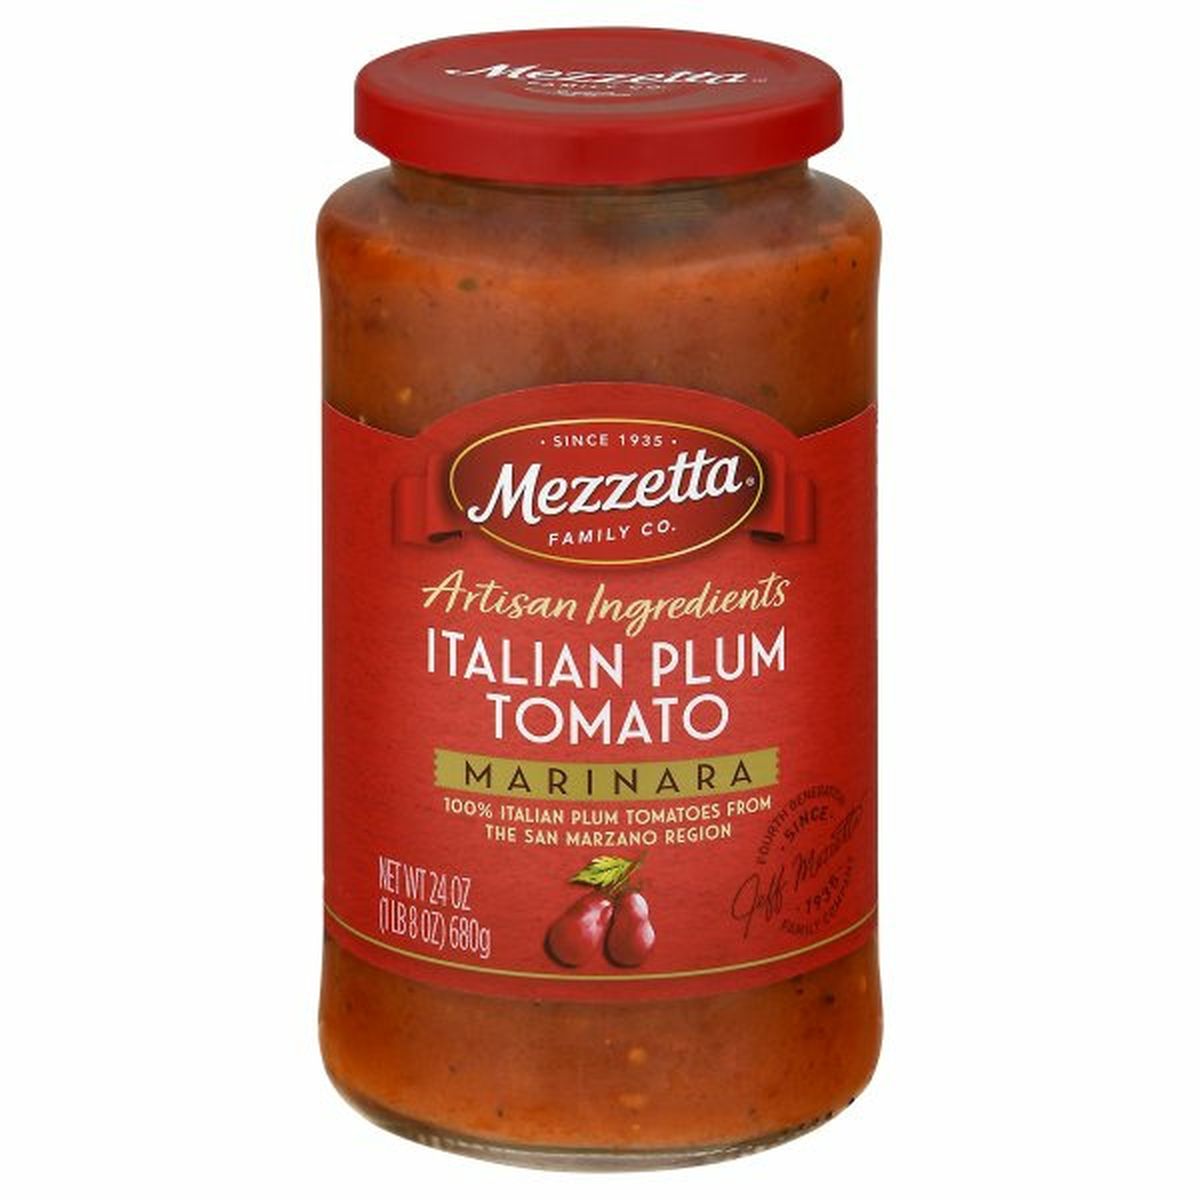 Calories in Mezzetta Marinara, Italian Plum Tomato